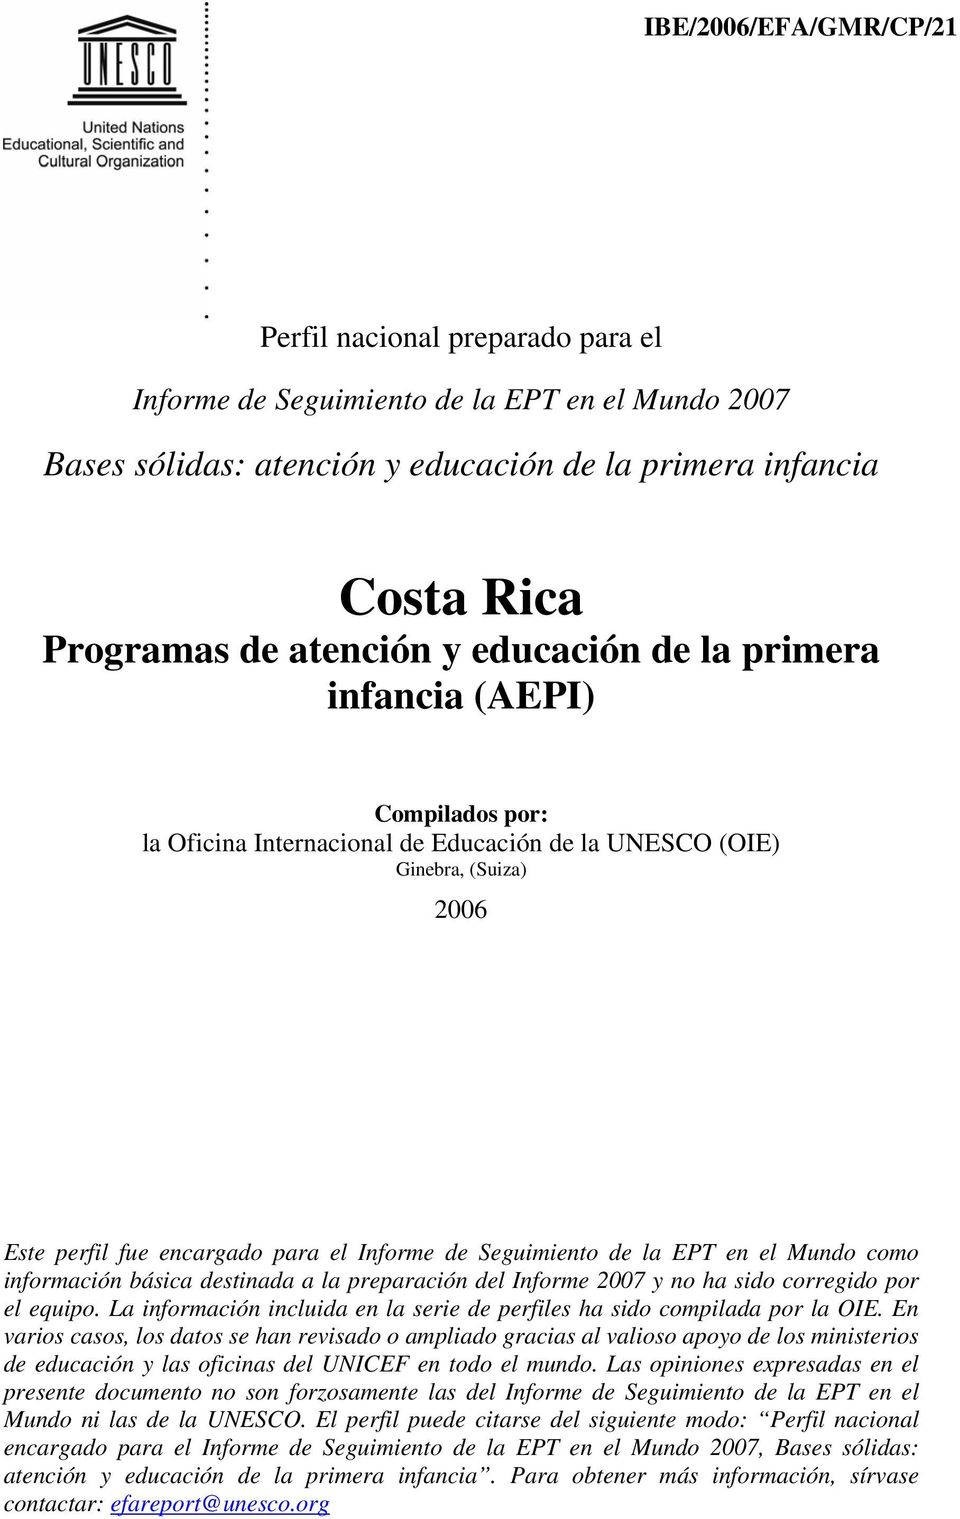 EPT en el Mundo como información básica destinada a la preparación del Informe 2007 y no ha sido corregido por el equipo. La información incluida en la serie de perfiles ha sido compilada por la OIE.